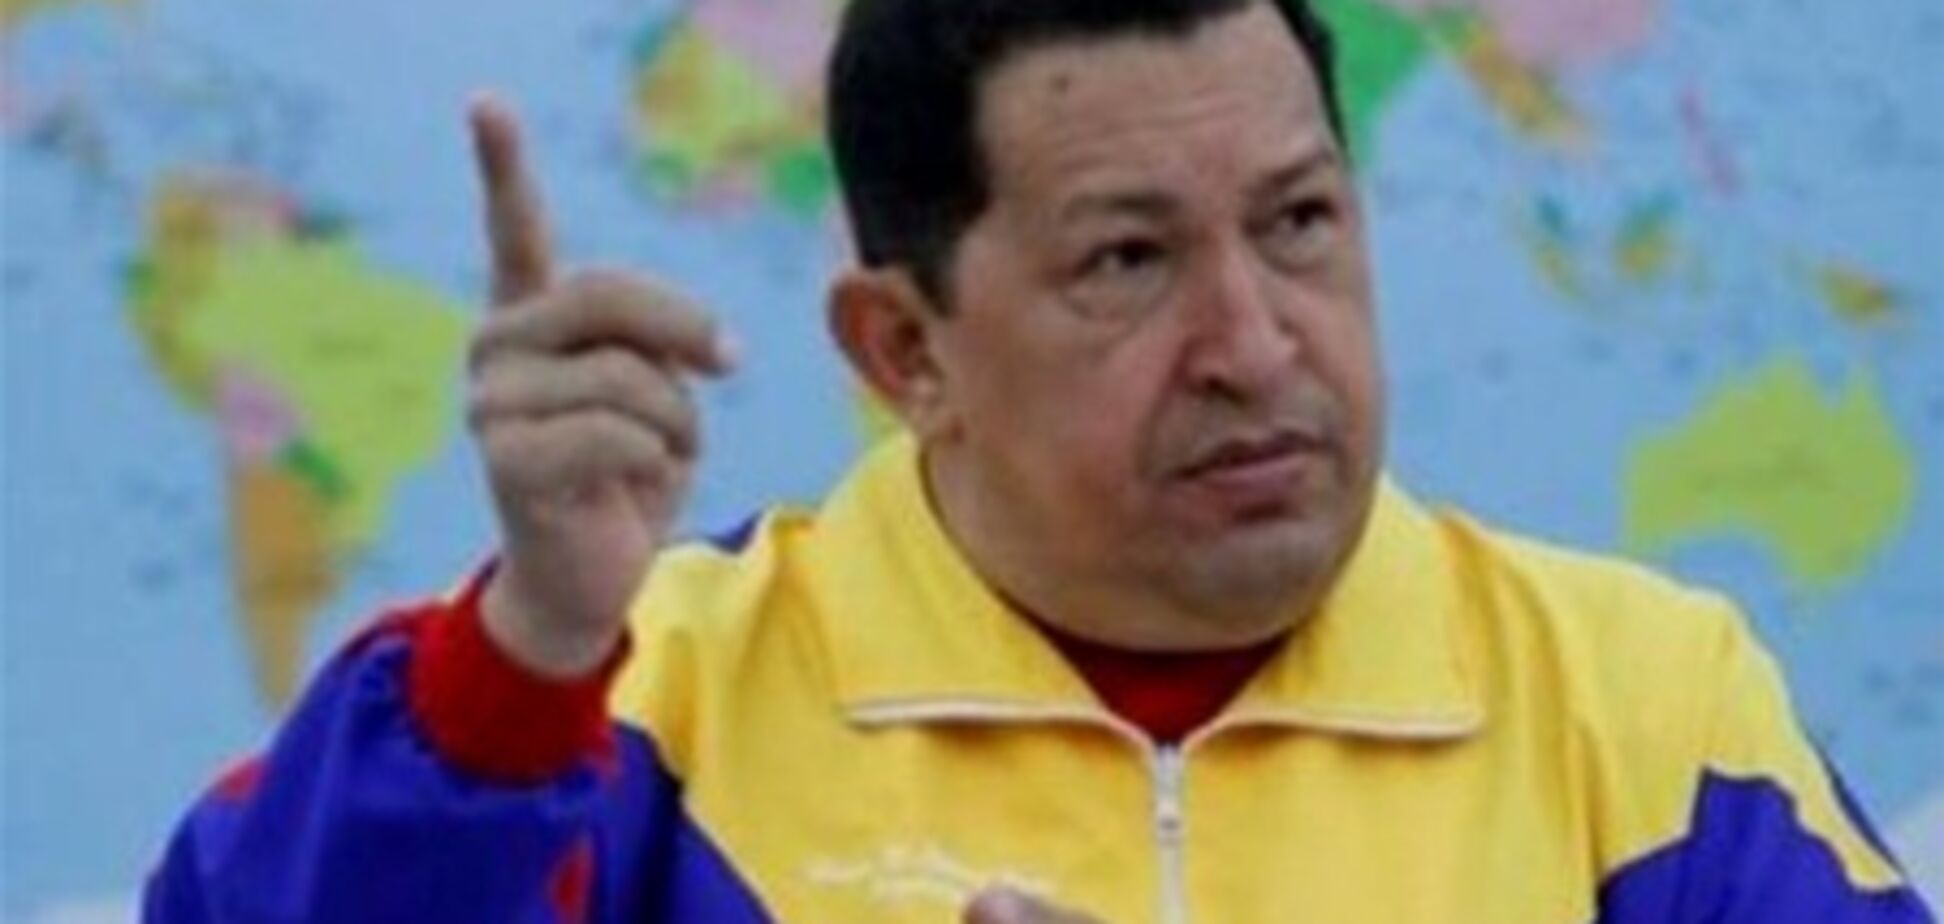 Слухи о критическом состоянии Чавеса смешны - министр